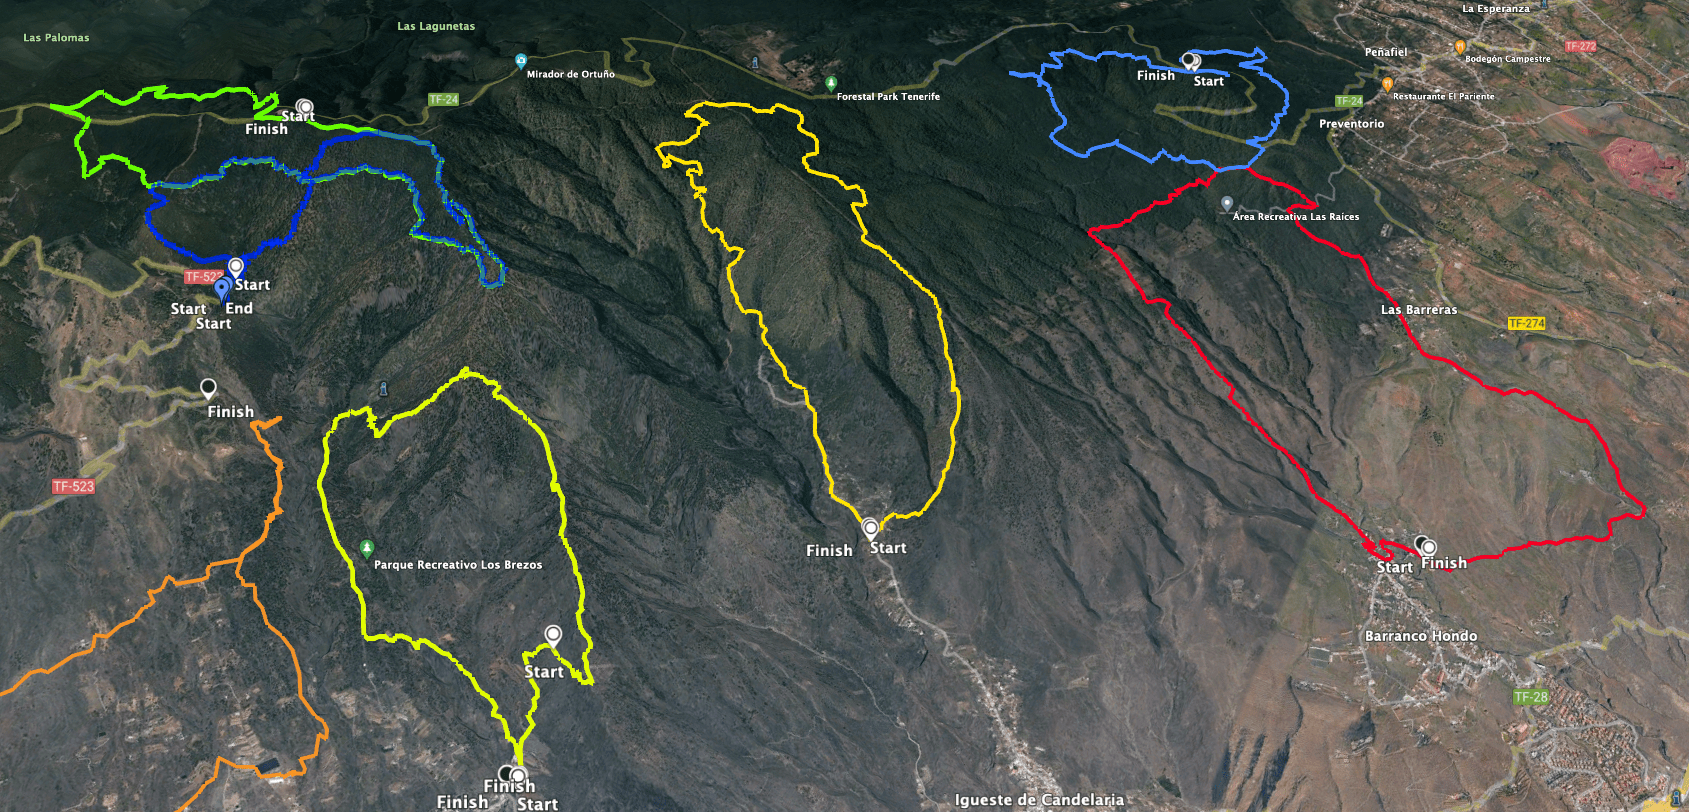 Track der Wanderung Igueste de Candelaria (Mitte gelb) und links davon Track Igonse (gelb) rechts in rot Rundtour Barranco Hondo und oben links Rundwanderung hoch über Candelaria (blau, grün)